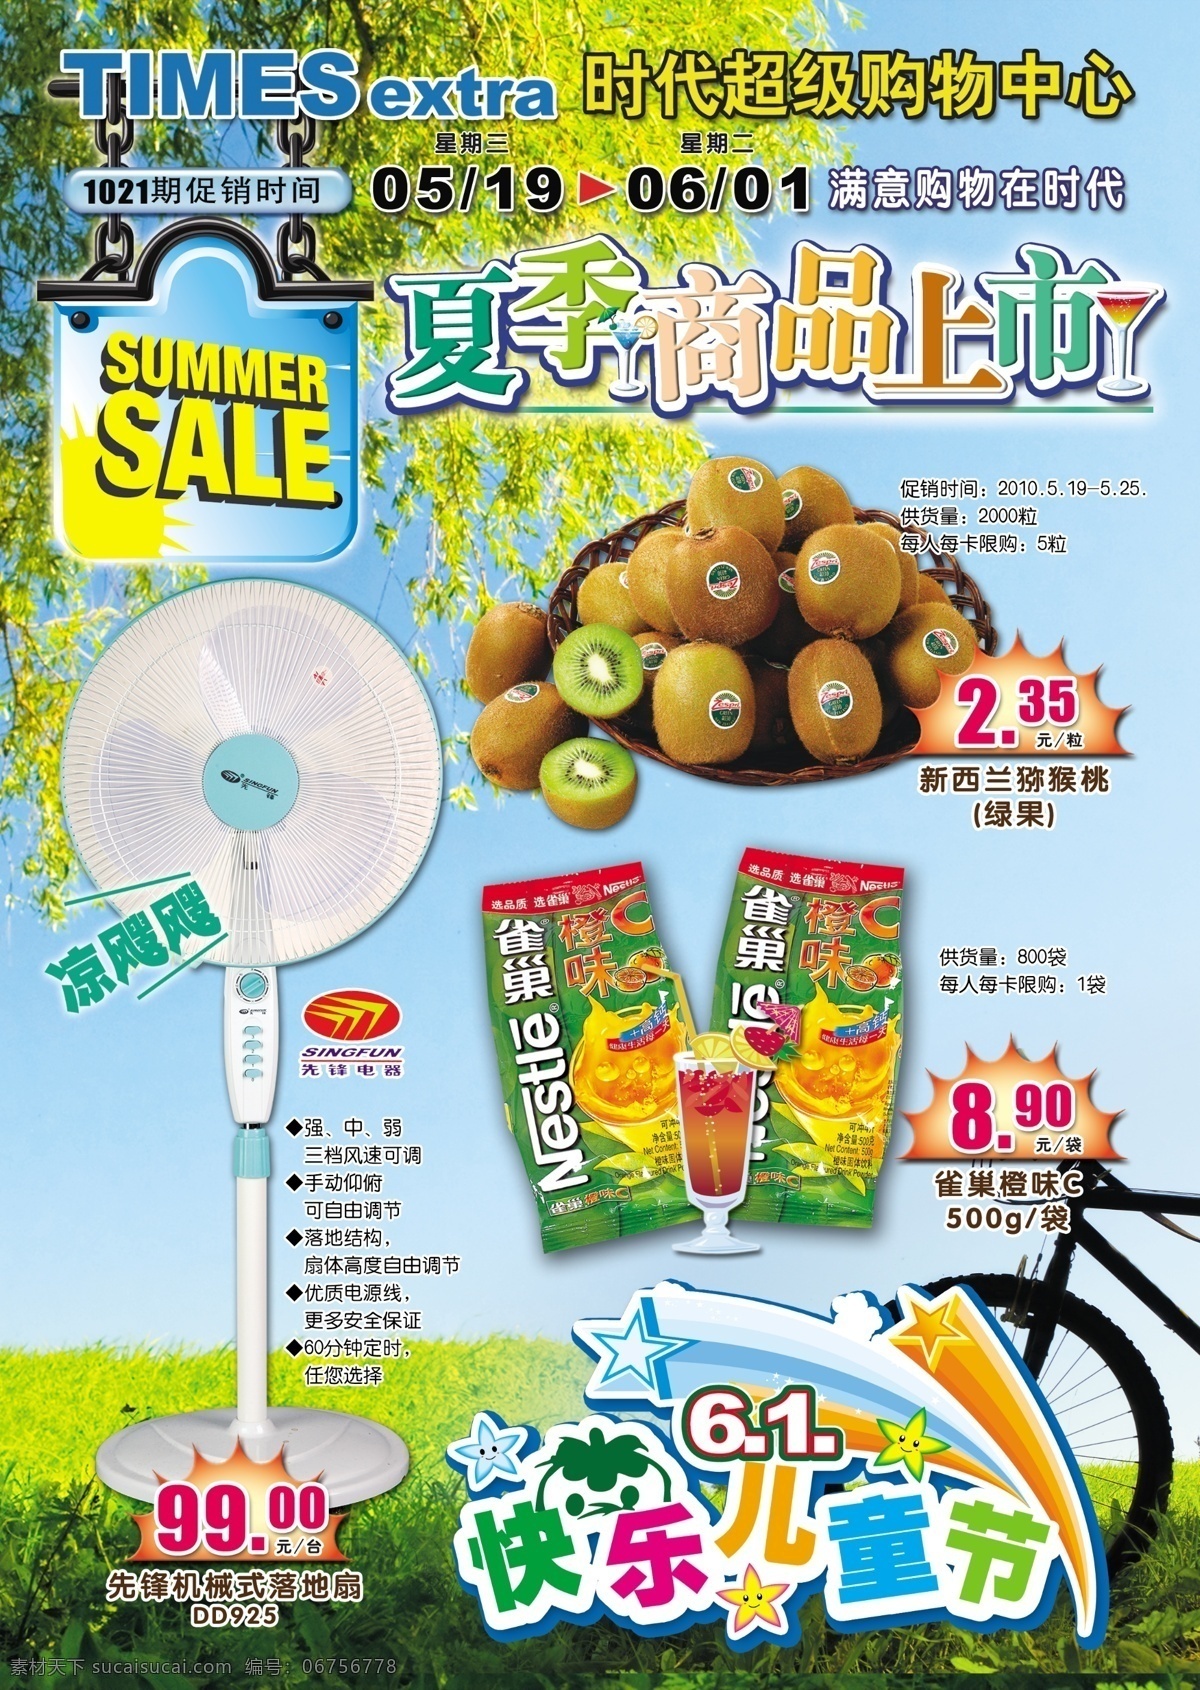 dm dm宣传单 广告设计模板 江苏 商品 上海 夏季 夏天 上市 模板下载 上市了 时代超市 乐天玛特 海报 源文件 其他海报设计